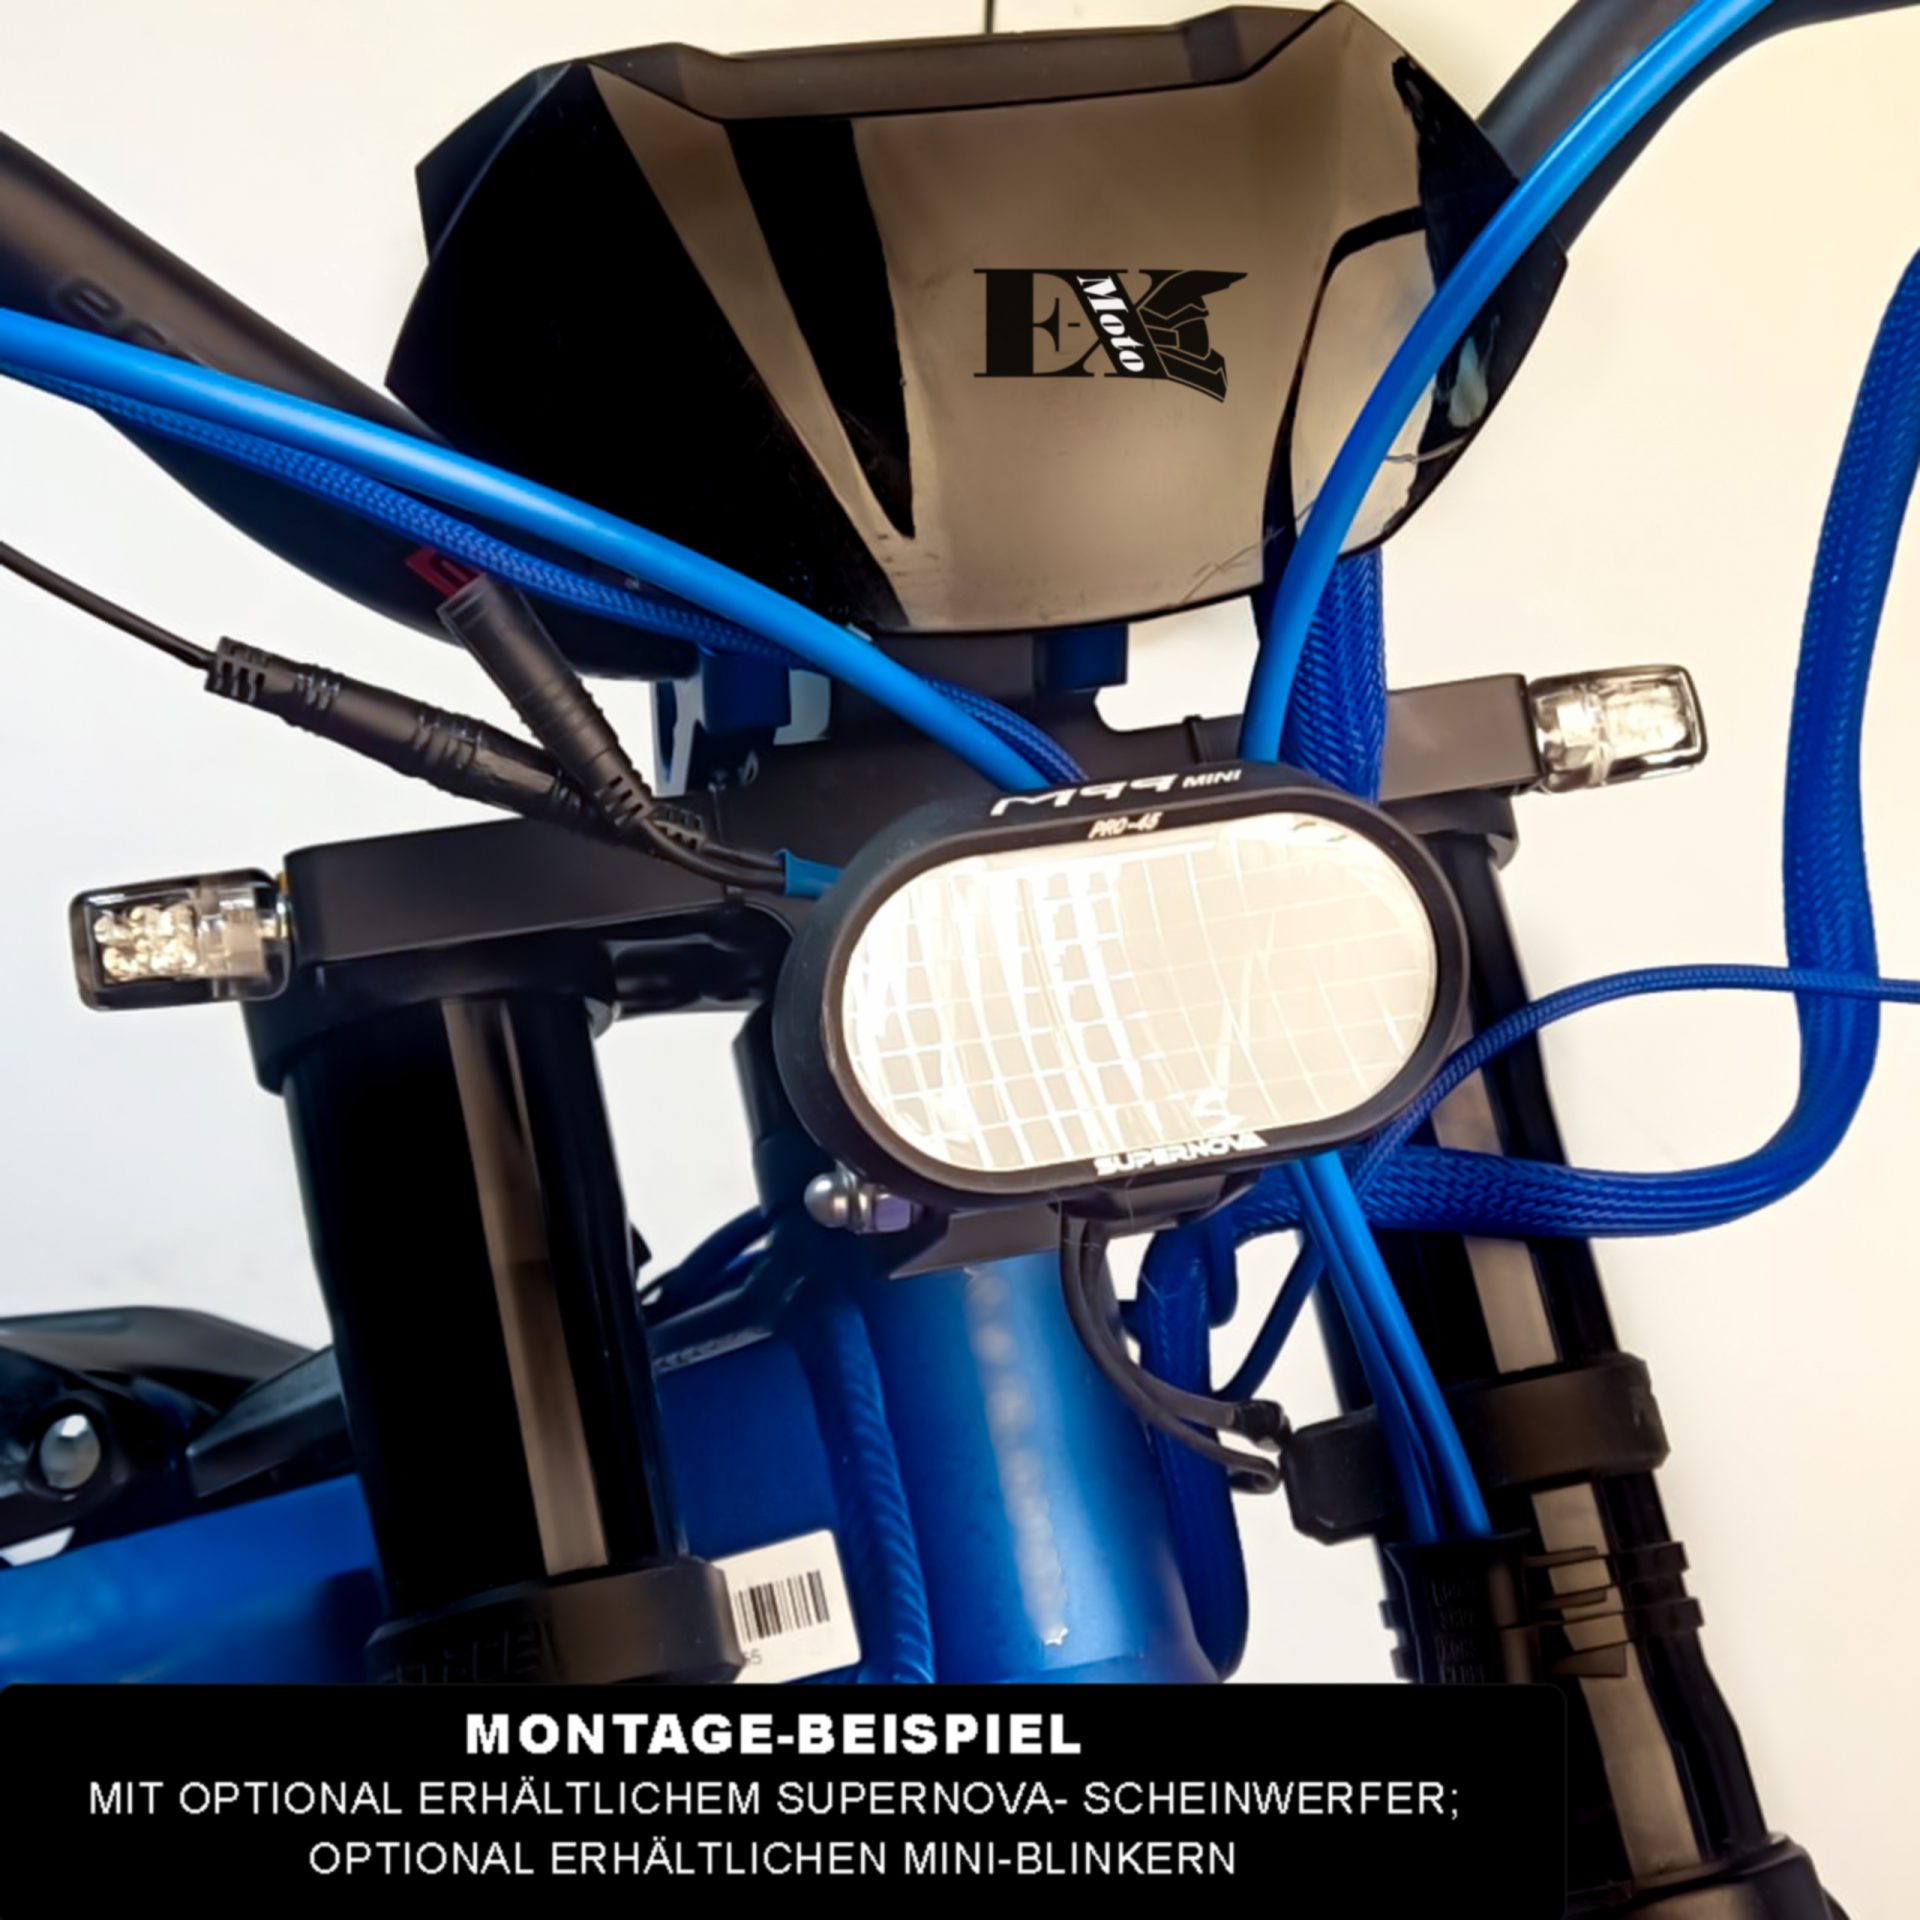 1 Stück Modifizierte Befestigungs Halterung Für Motorrad Scheinwerfer, aktuelle Trends, günstig kaufen